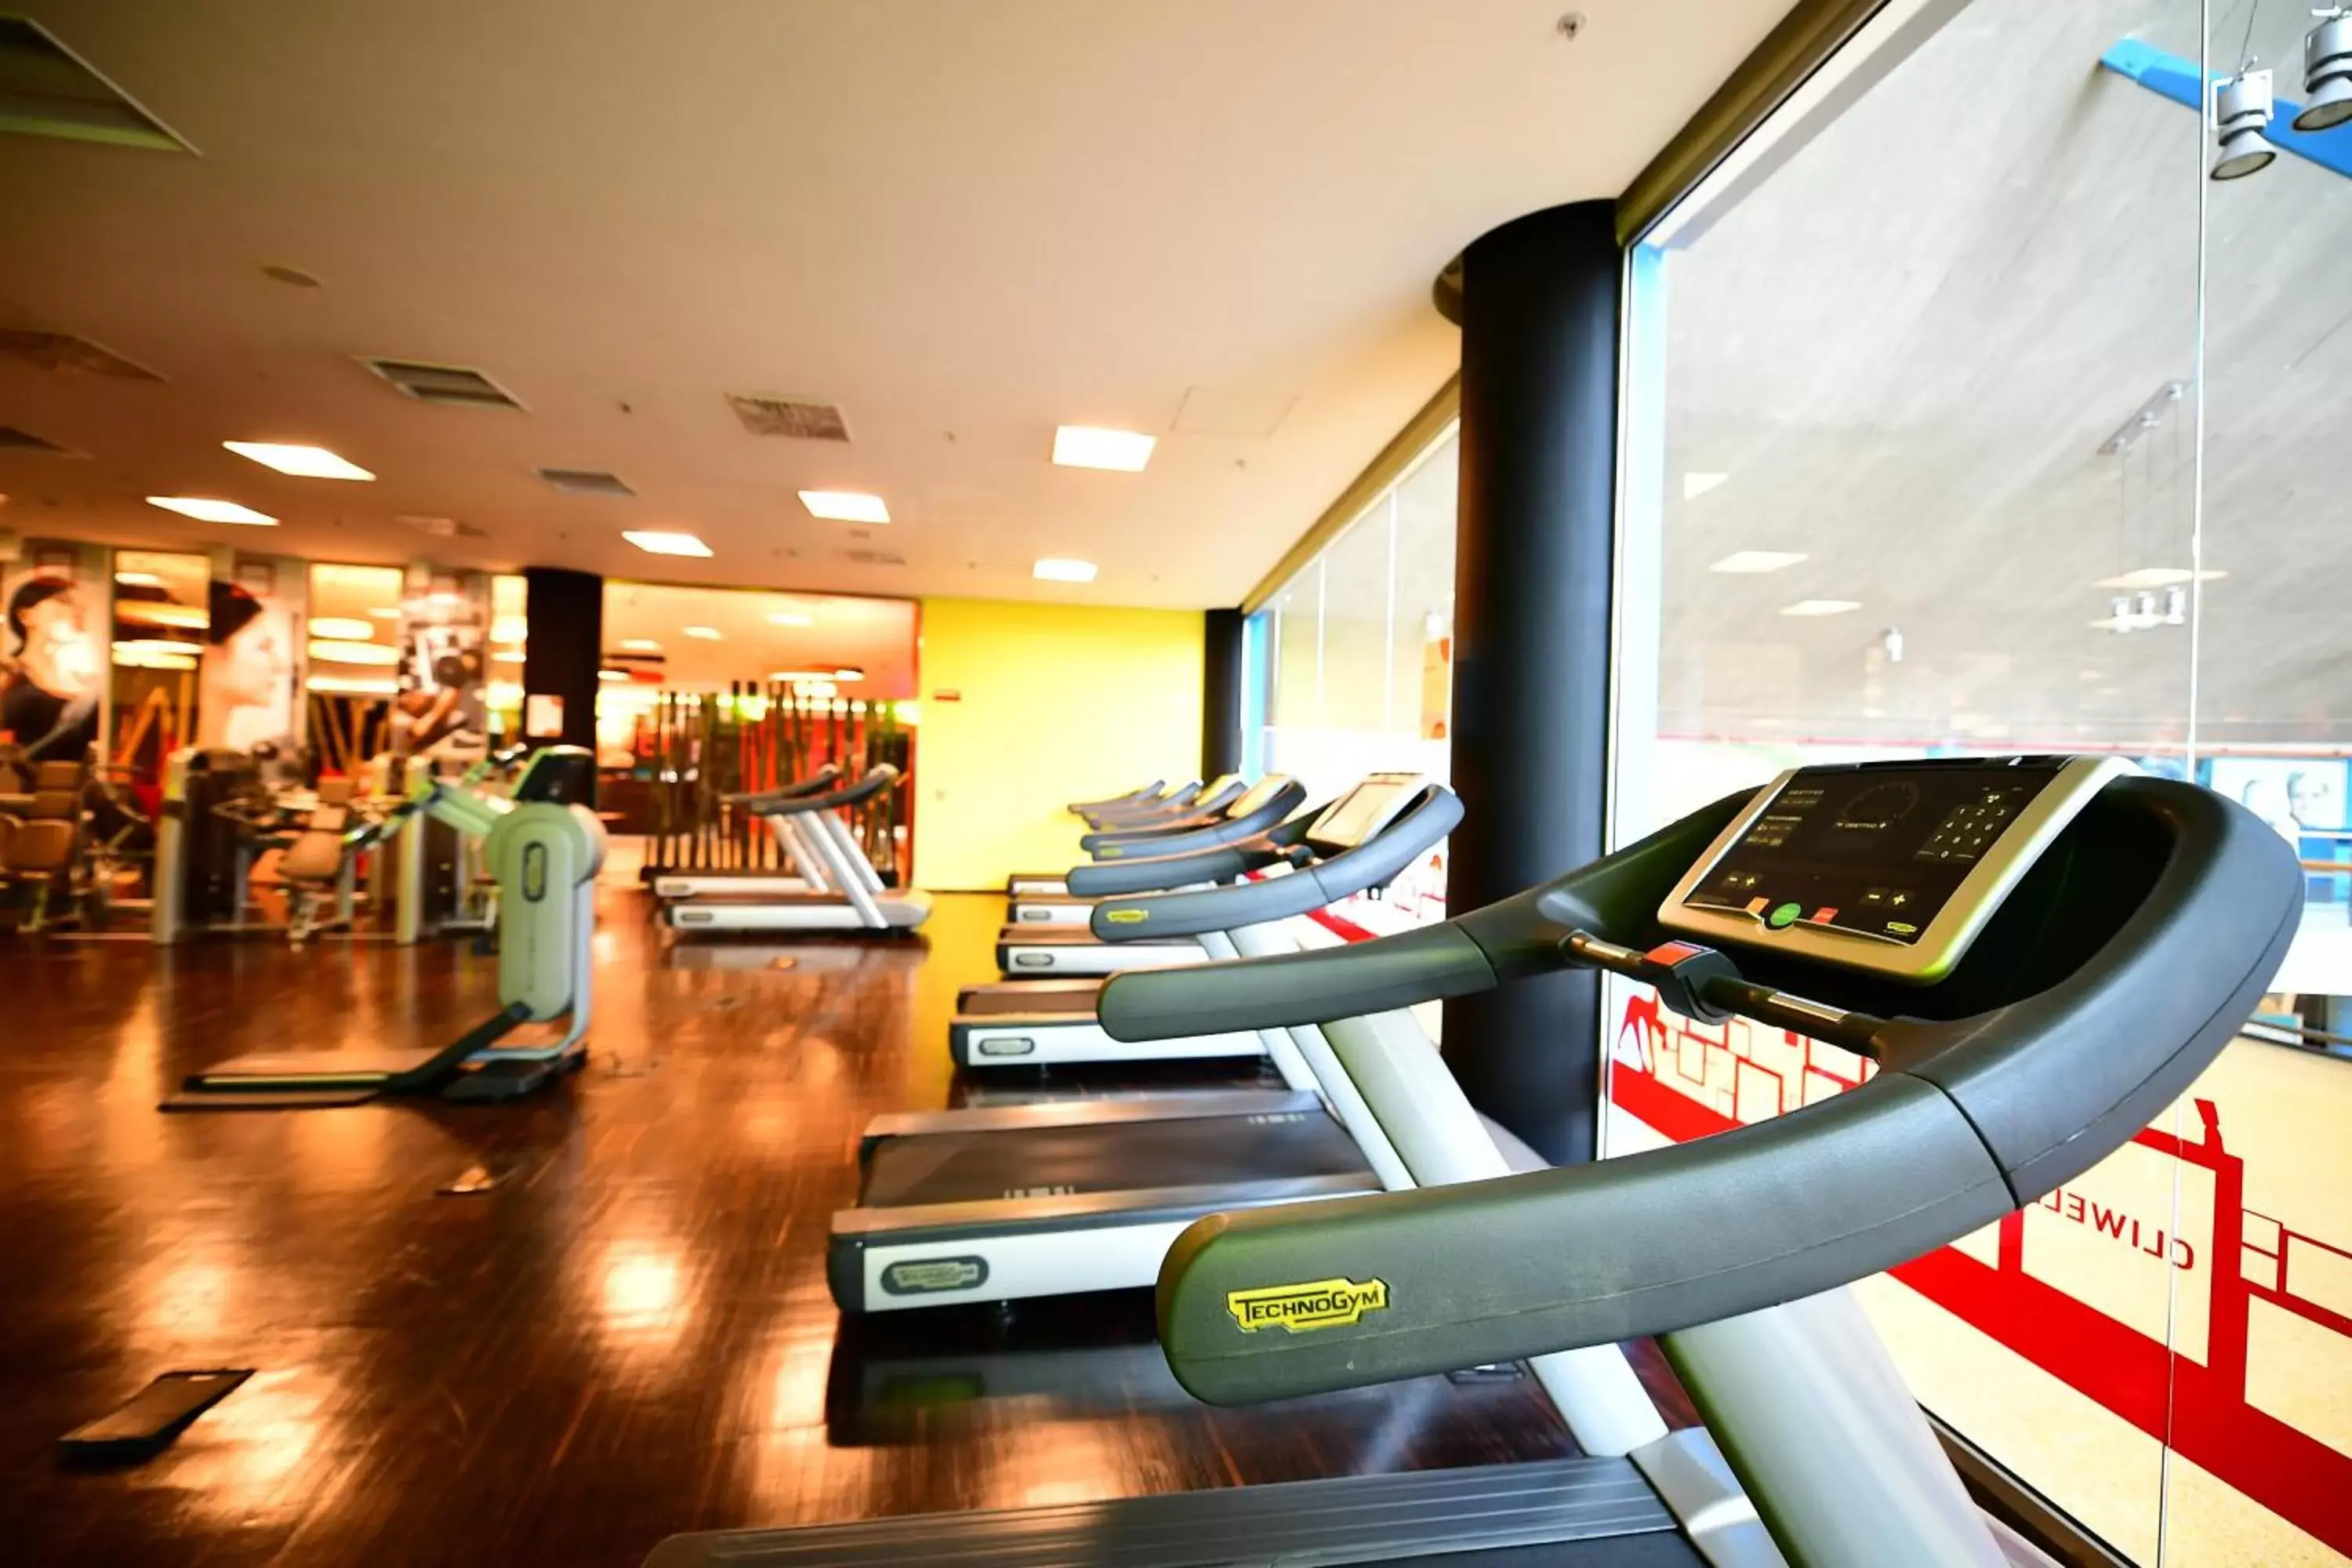 Fitness centre/facilities, Fitness Center/Facilities in Holiday Inn Nola - Naples Vulcano Buono, an IHG Hotel